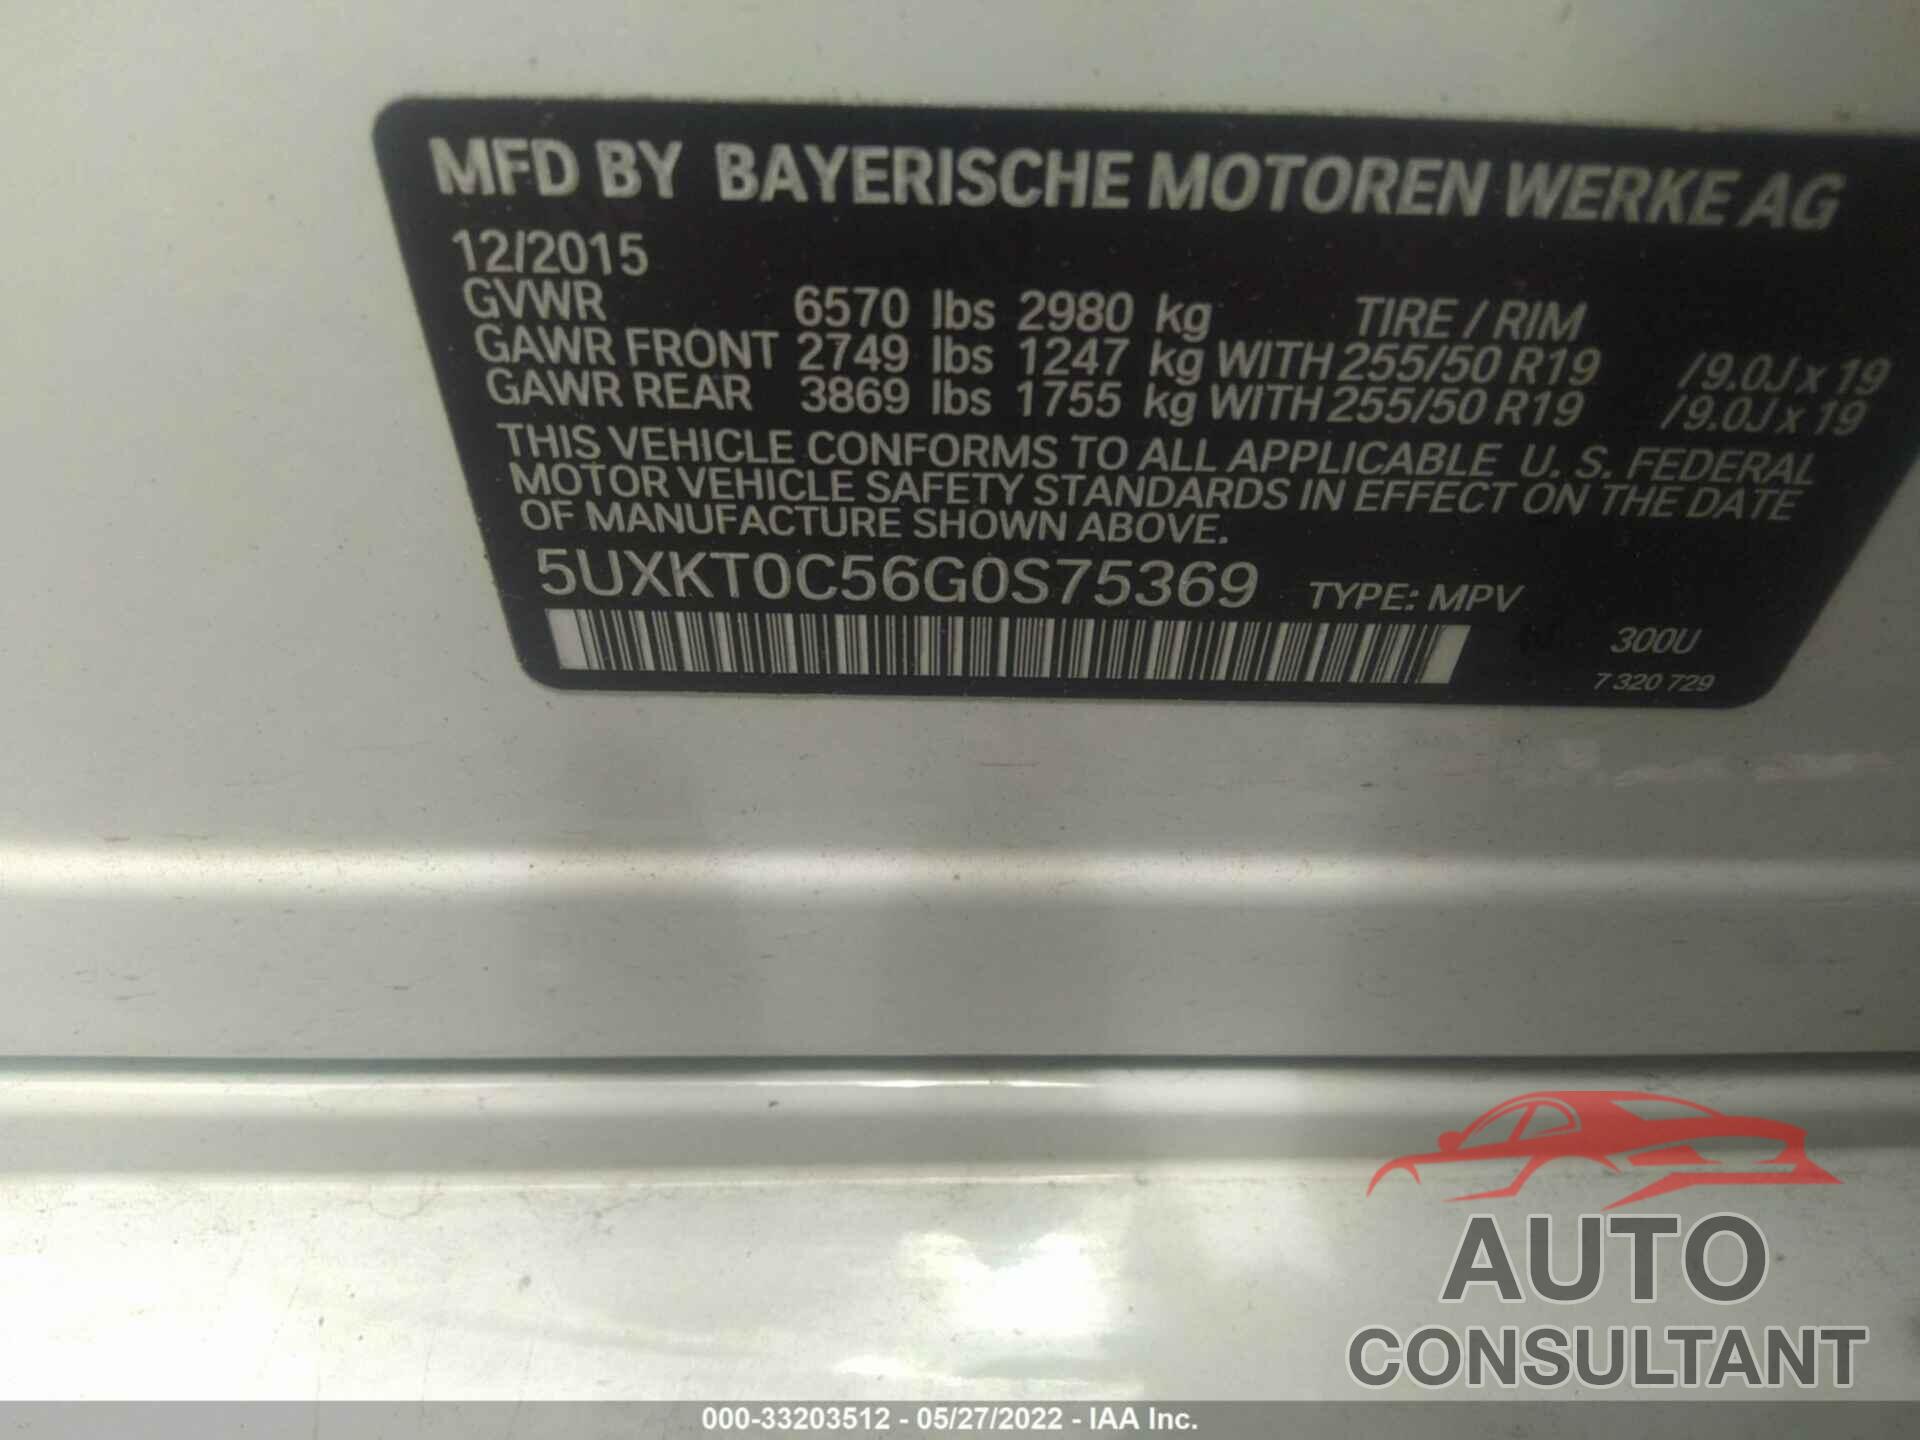 BMW X5 EDRIVE 2016 - 5UXKT0C56G0S75369